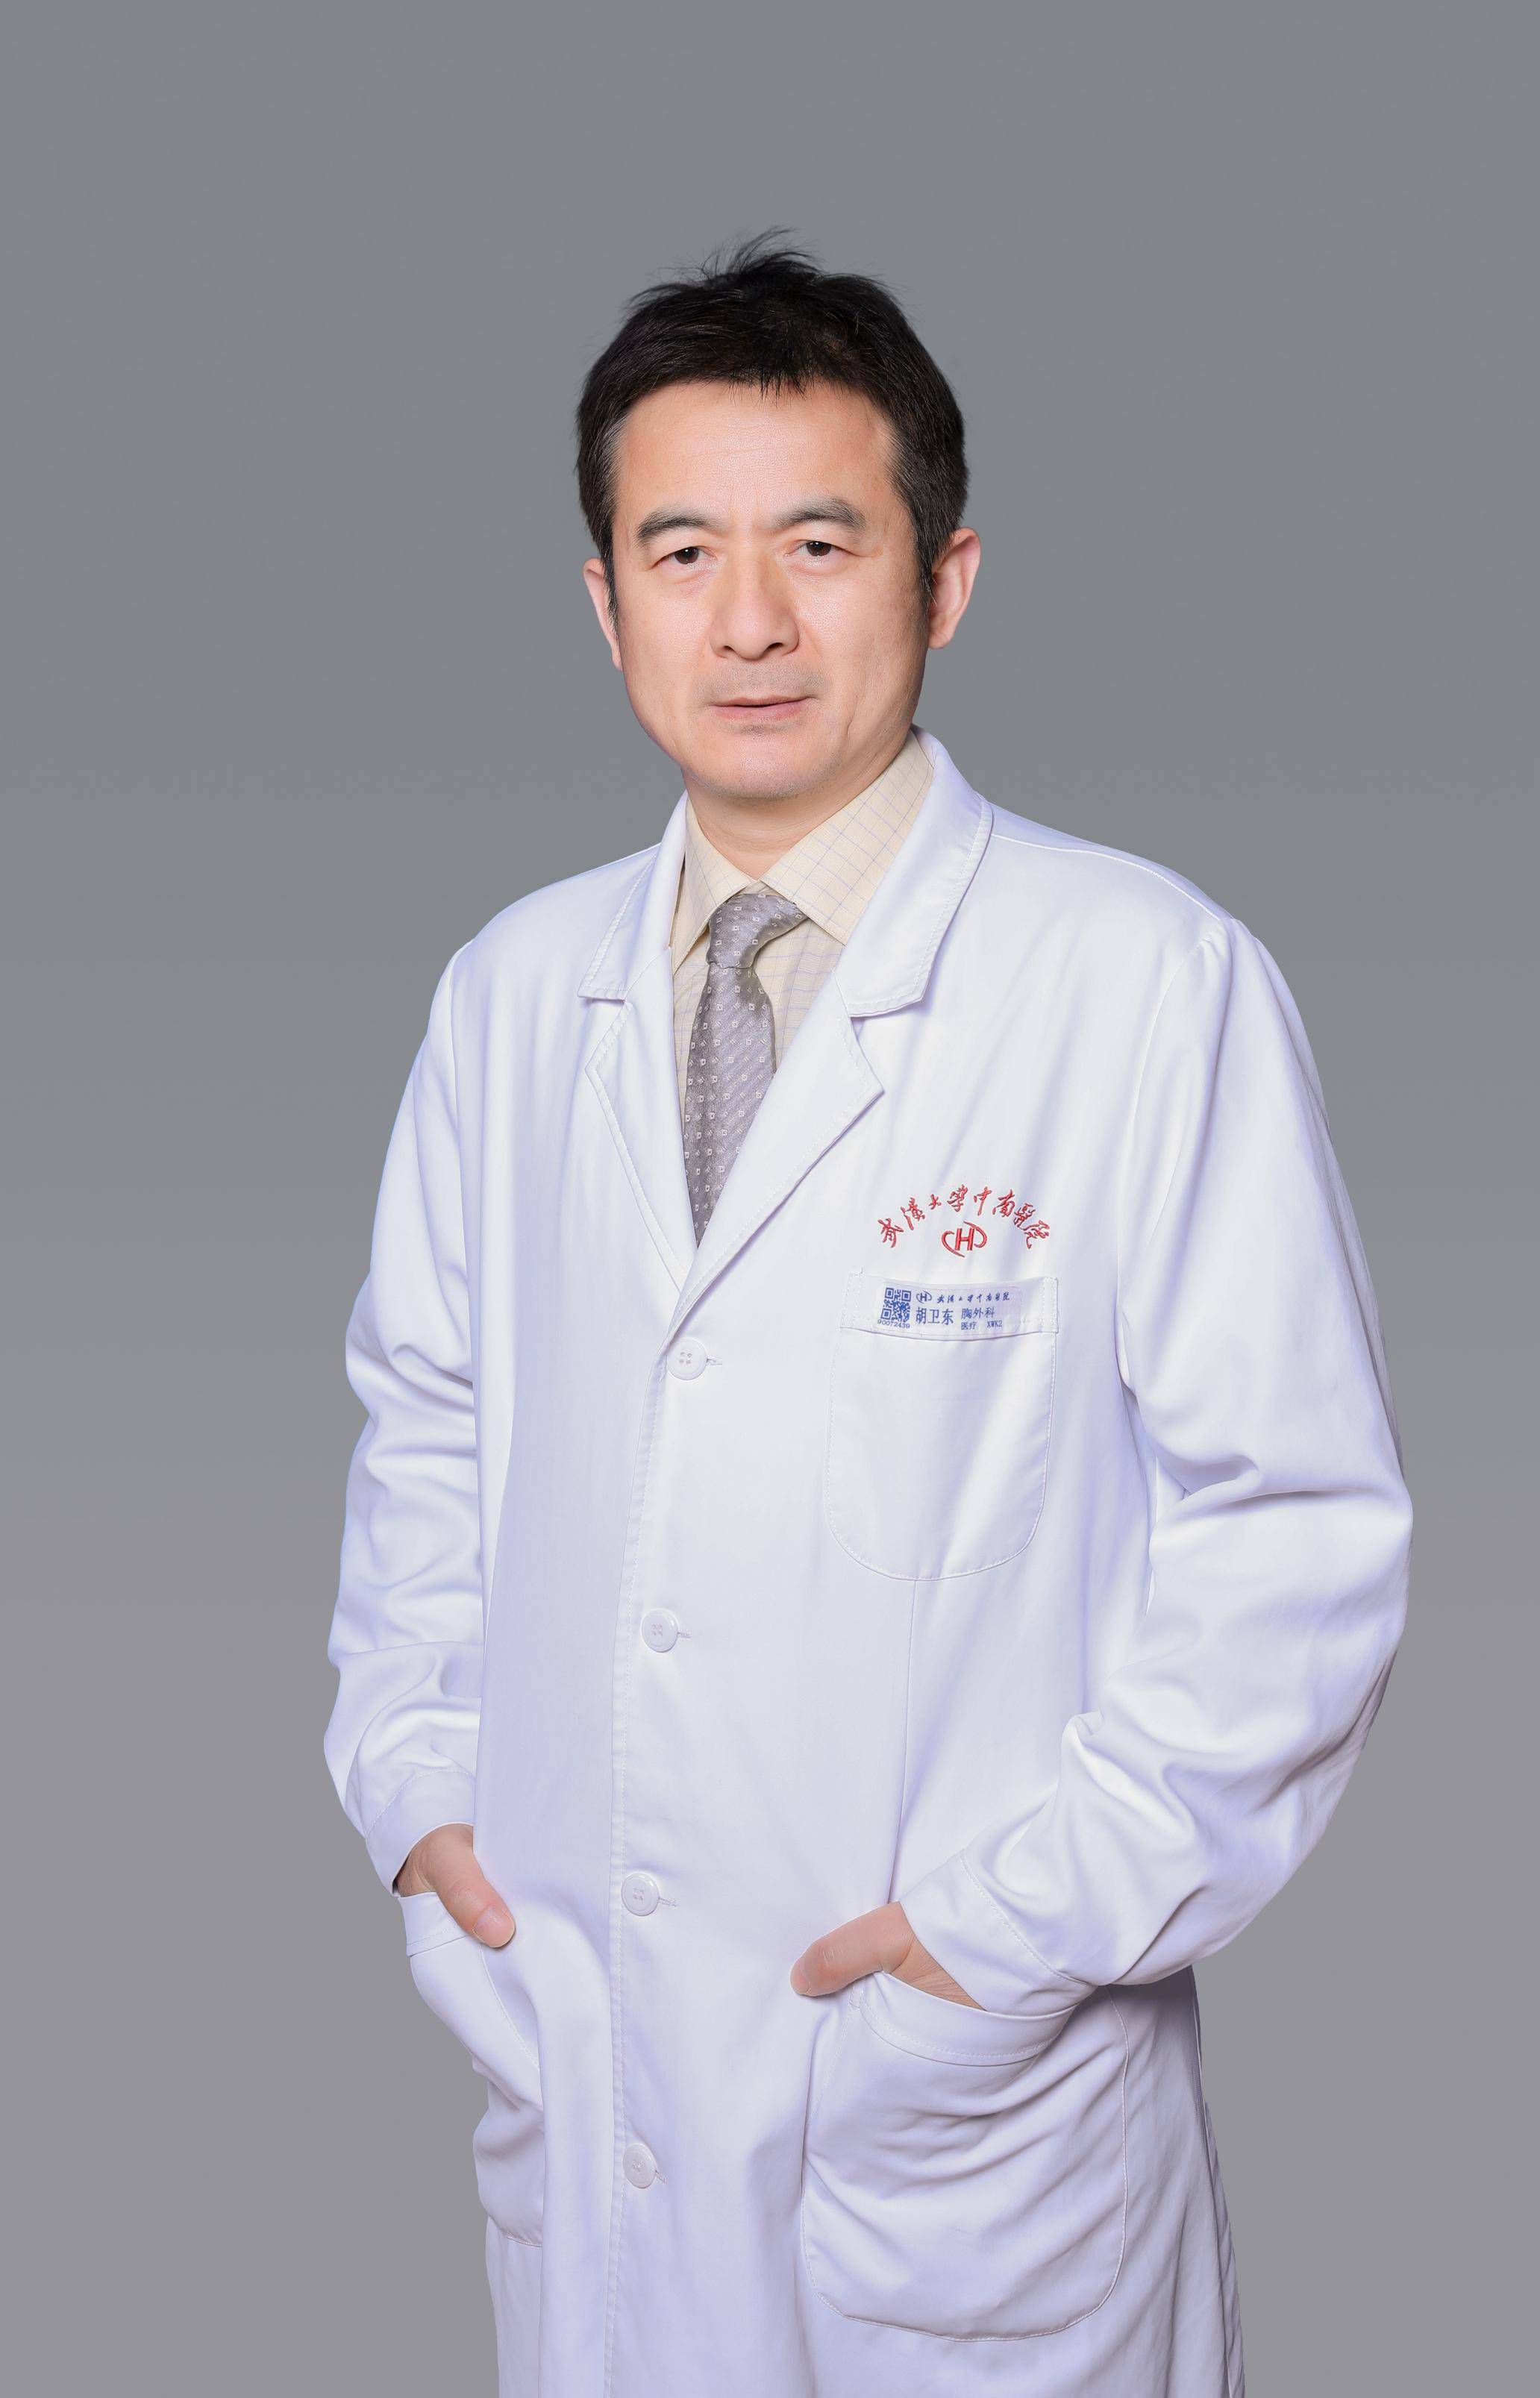 武大中南医院胸外科专家胡卫东体恤患者的帅医生坐诊从不限号